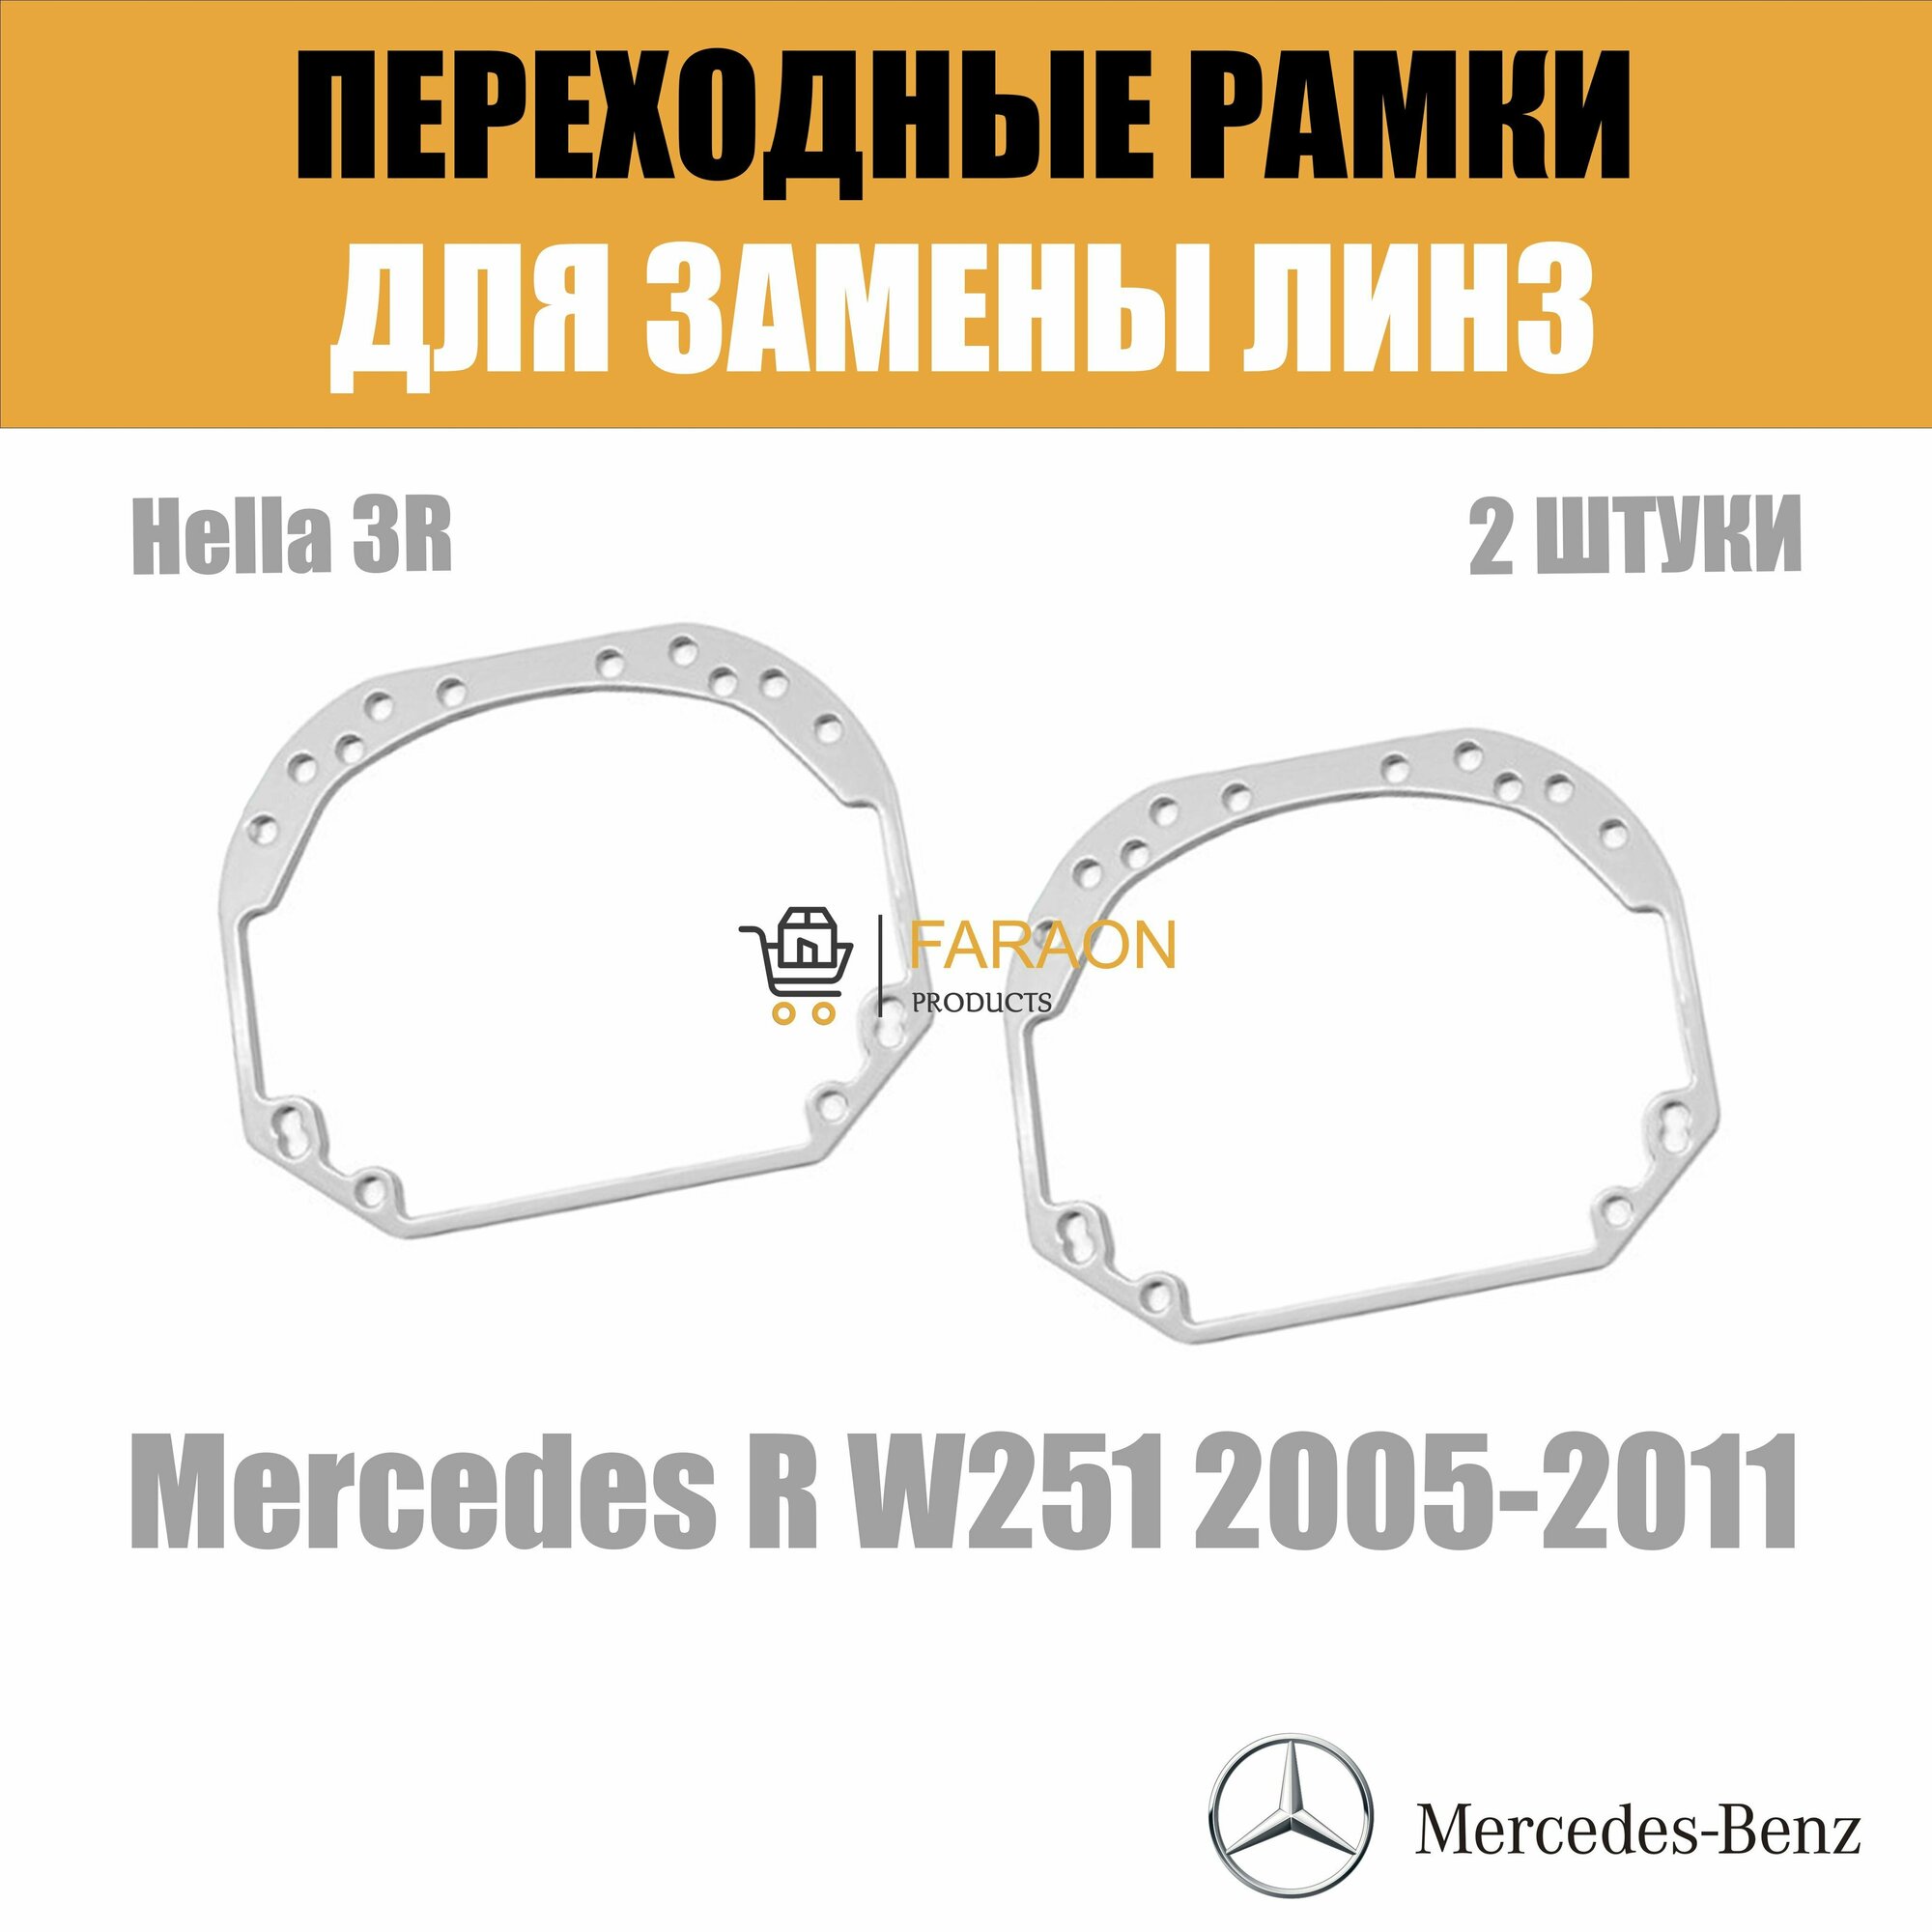 Переходные рамки для замены линз №1 на Mercedes R W251 2008-2011 Крепление Hella 3R